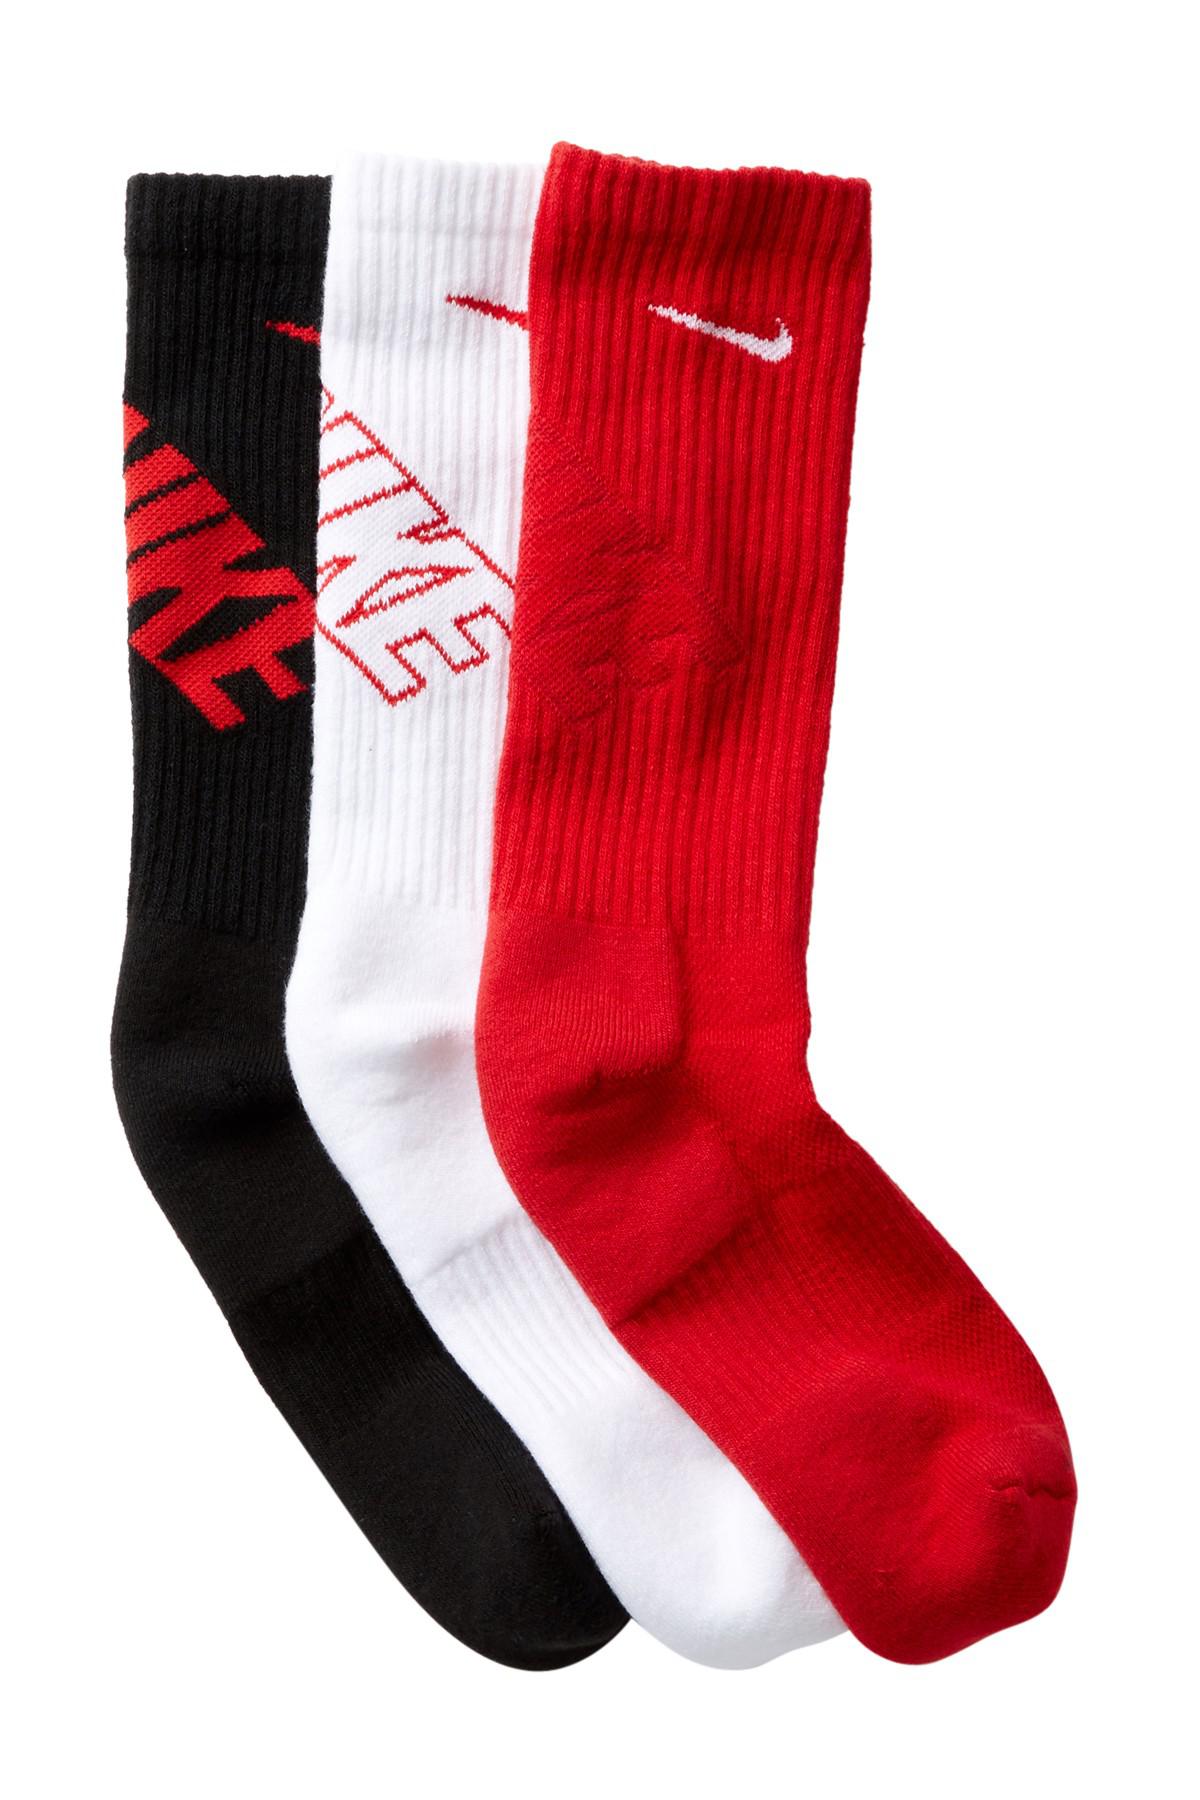 Nike Cotton Ultimatum 3p Dri-fit Crew Socks - Pack Of 3 in u-w-w-u-b ...